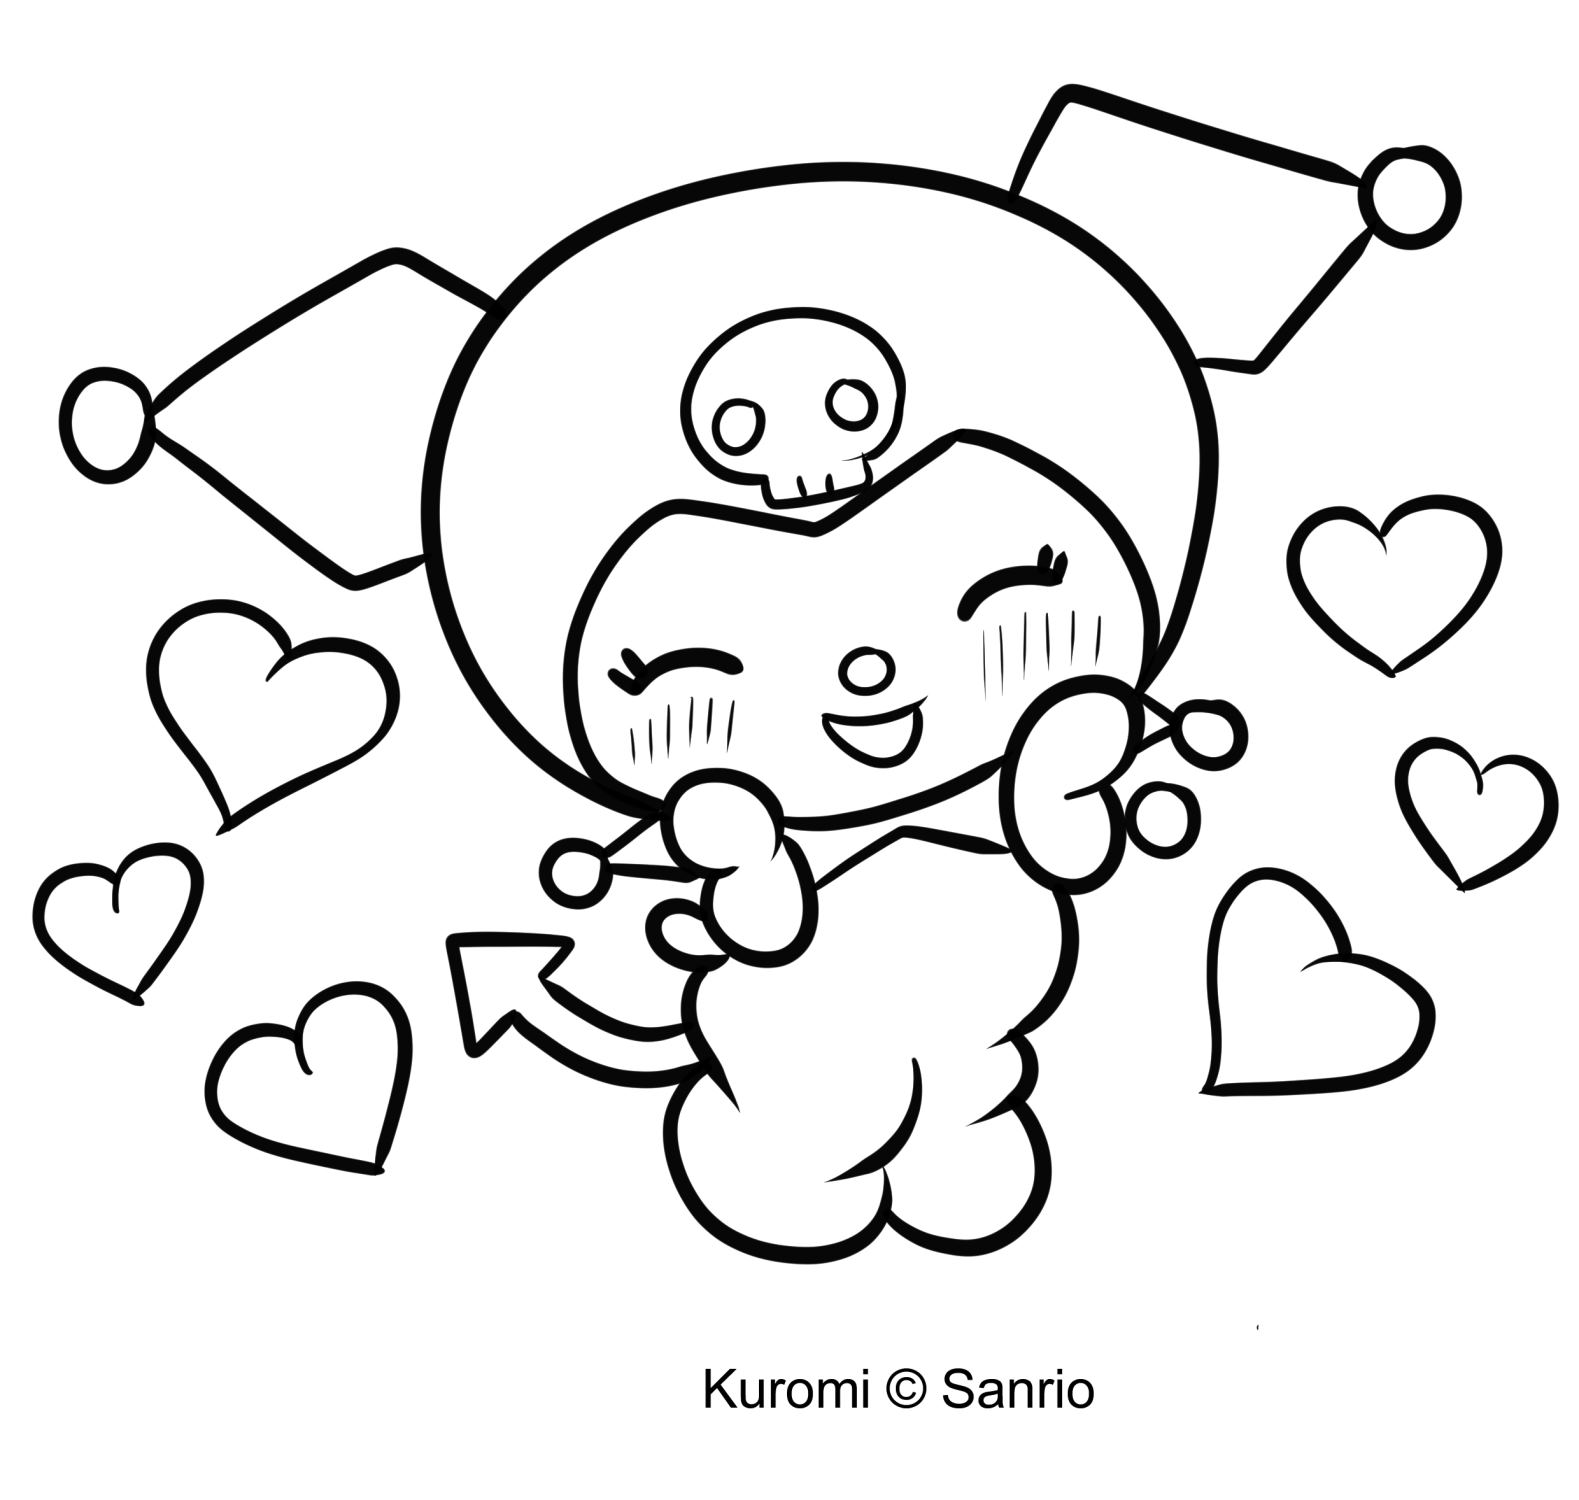 Kuromi 09 van My Melody kleurplaat om af te drukken en in te kleuren